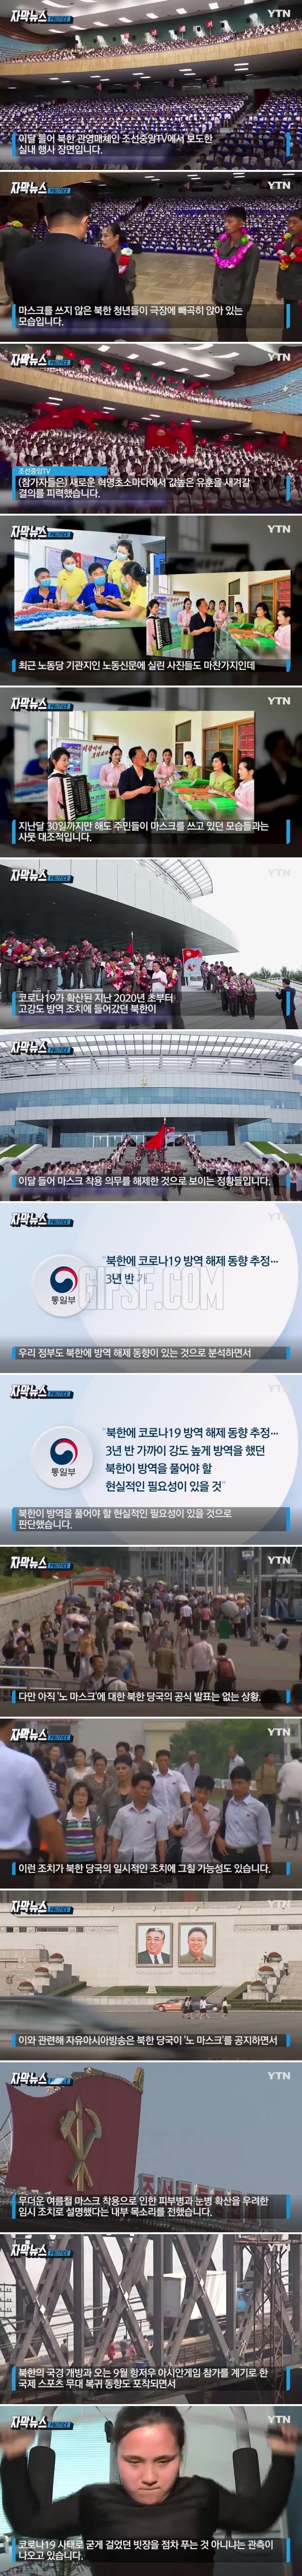 북한 공식 발표 없지만.조선중앙TV에 포착한 모습.jpg